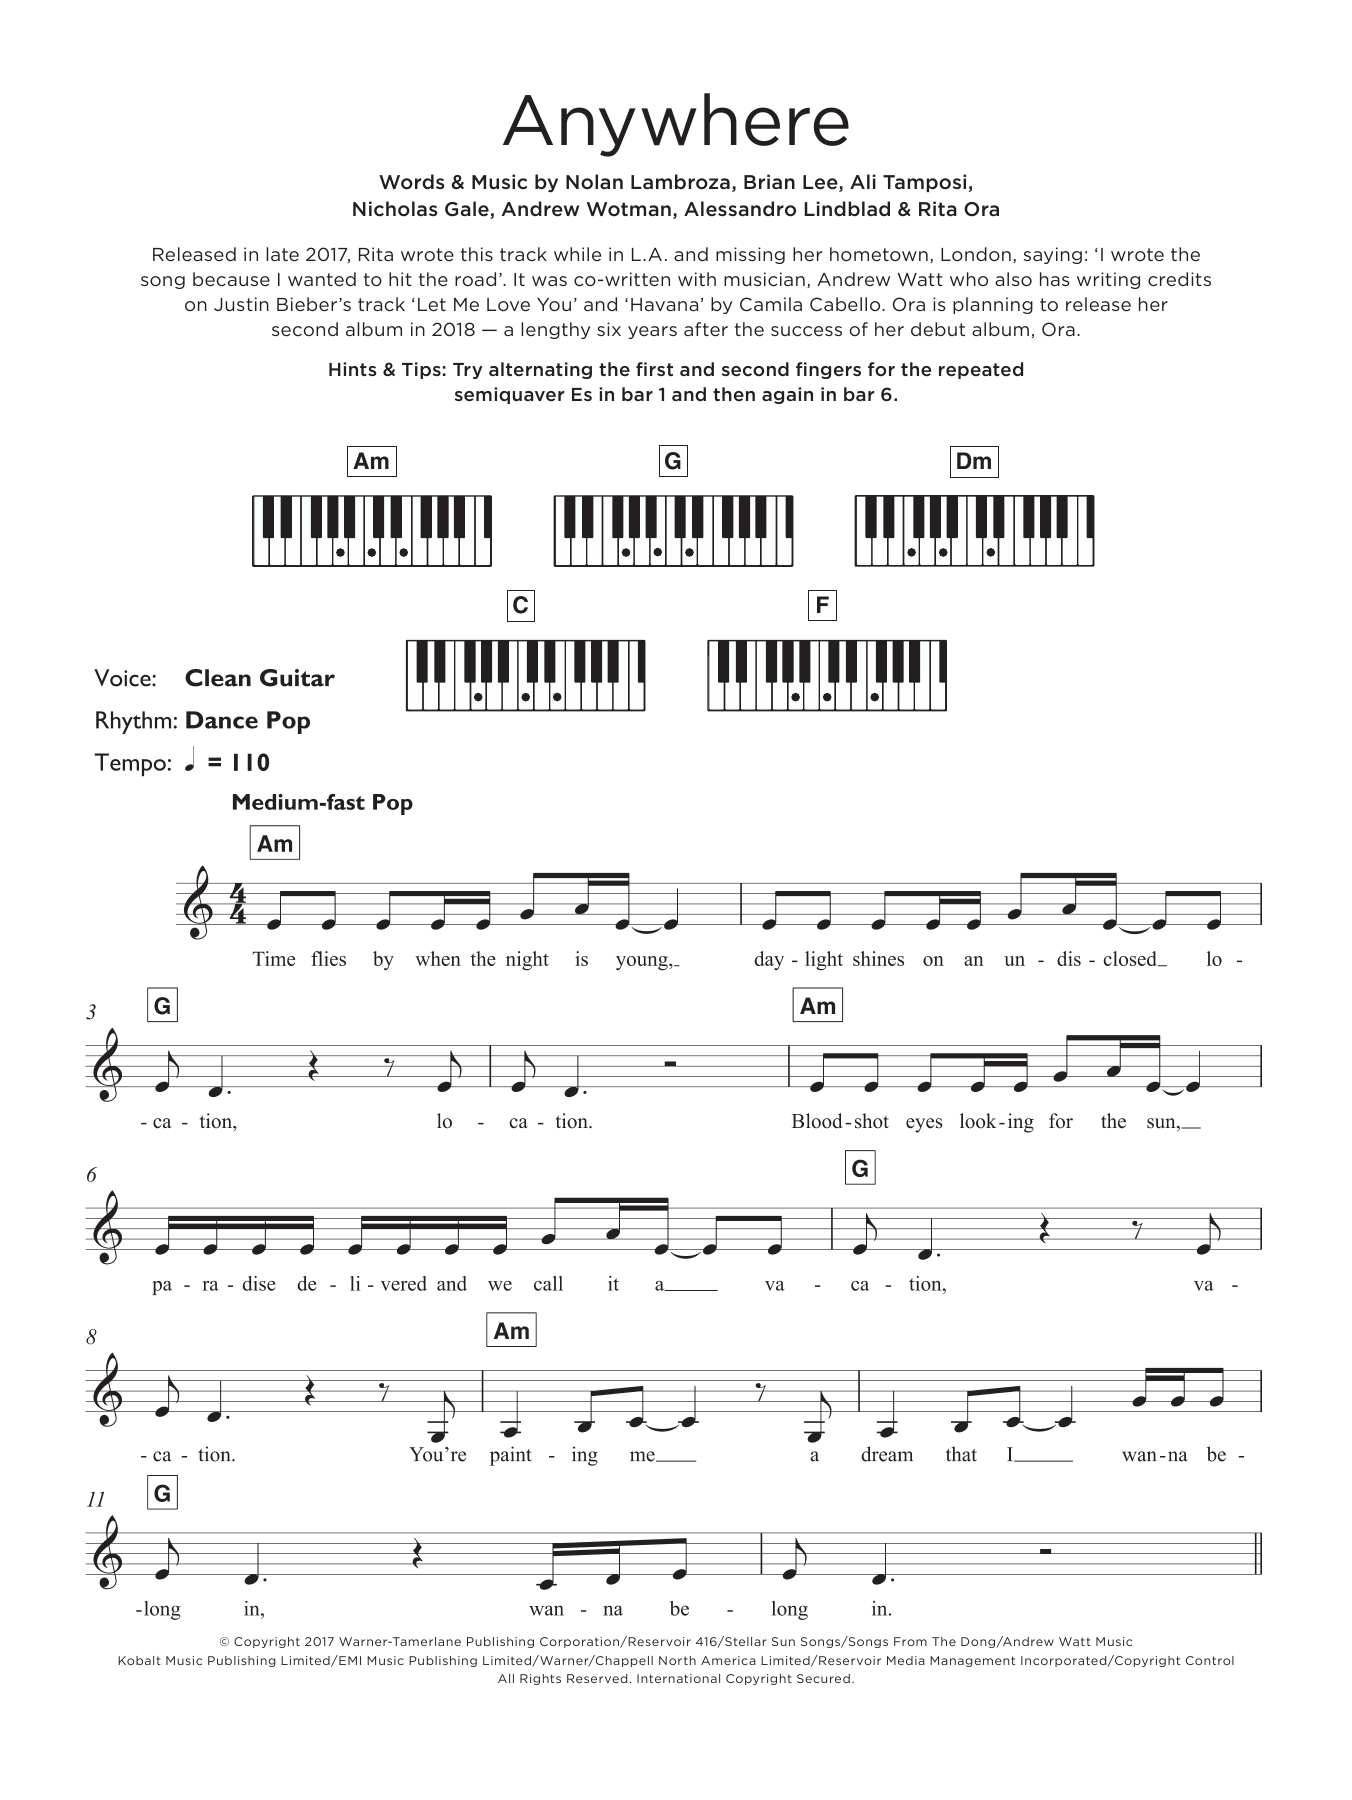 Rita Ora Anywhere Sheet Music Notes & Chords for Keyboard - Download or Print PDF